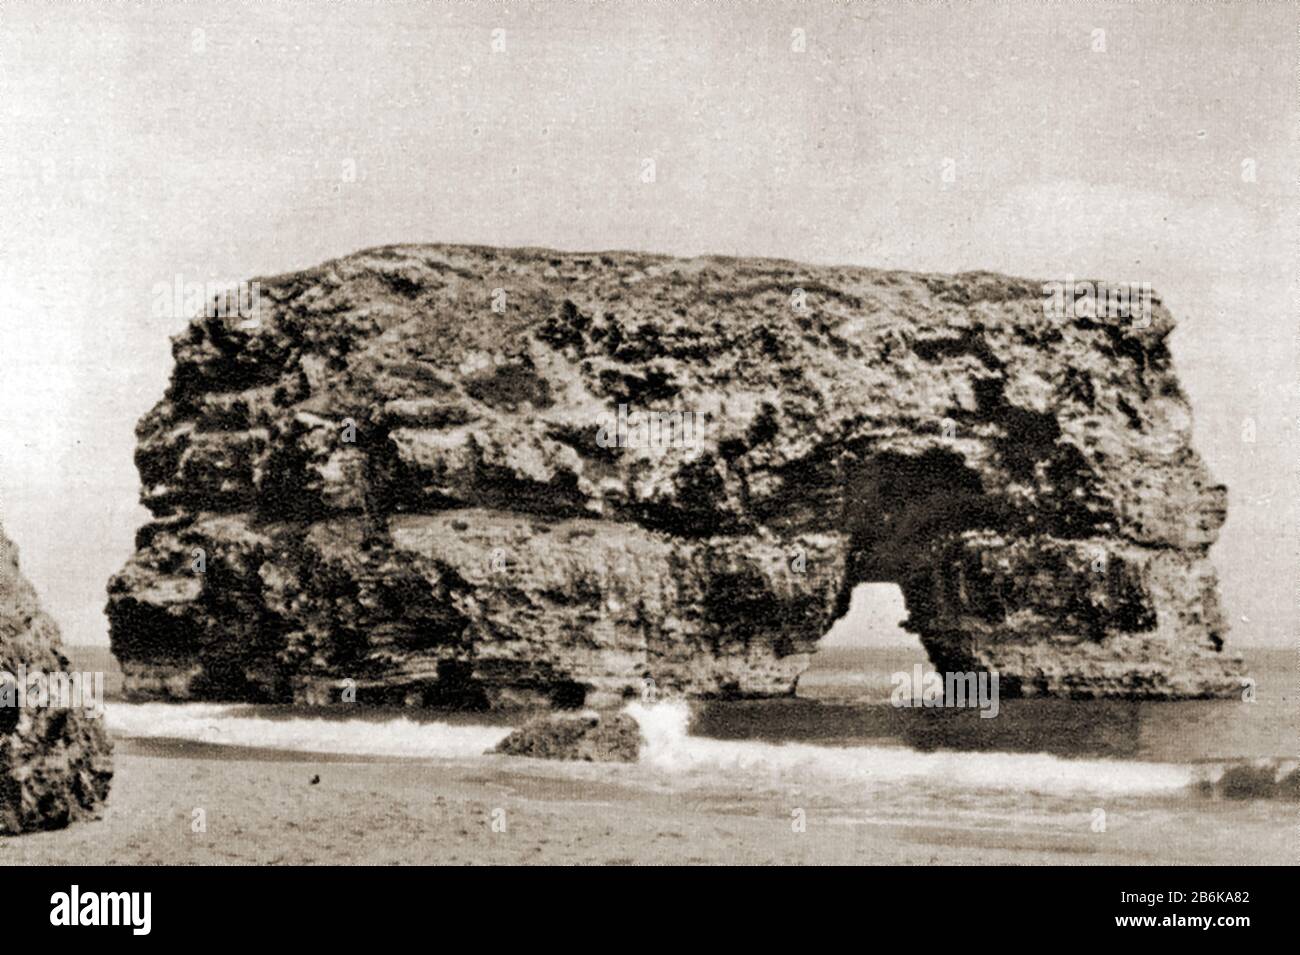 Circa 1950's fotografia che mostra Marsden Rock, South Shields , Inghilterra come era a quel tempo. A causa dell'erosione nel corso degli anni l'arco crollò. La roccia fornisce ancora una casa a colonie di uccelli marini come gattie a zampe nere, fulmars, gabbiani e cormorani Foto Stock